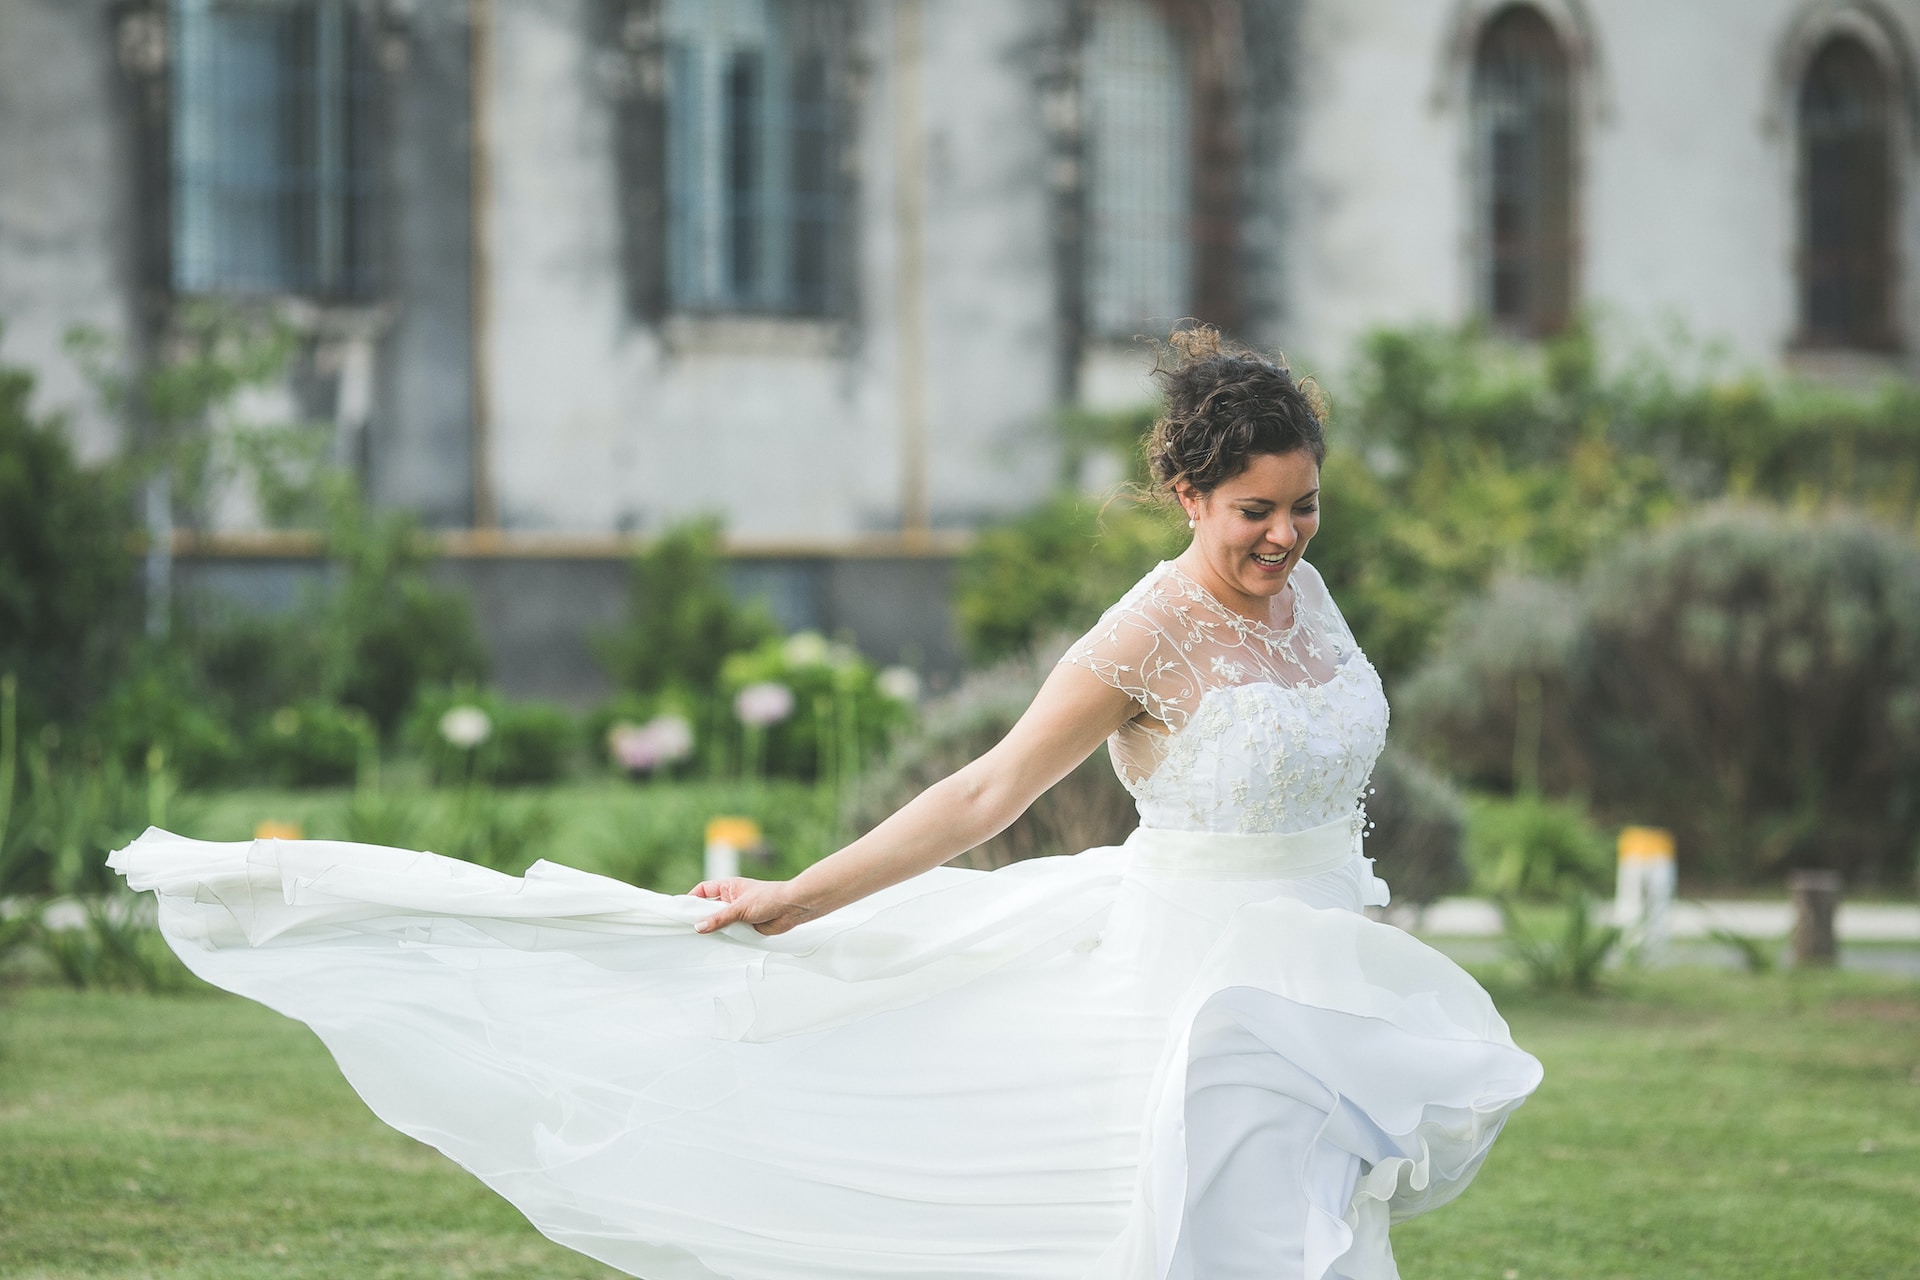 Brautmode für Destination Weddings: Leichte und luftige Kleider für eine traumhafte Hochzeit am Strand